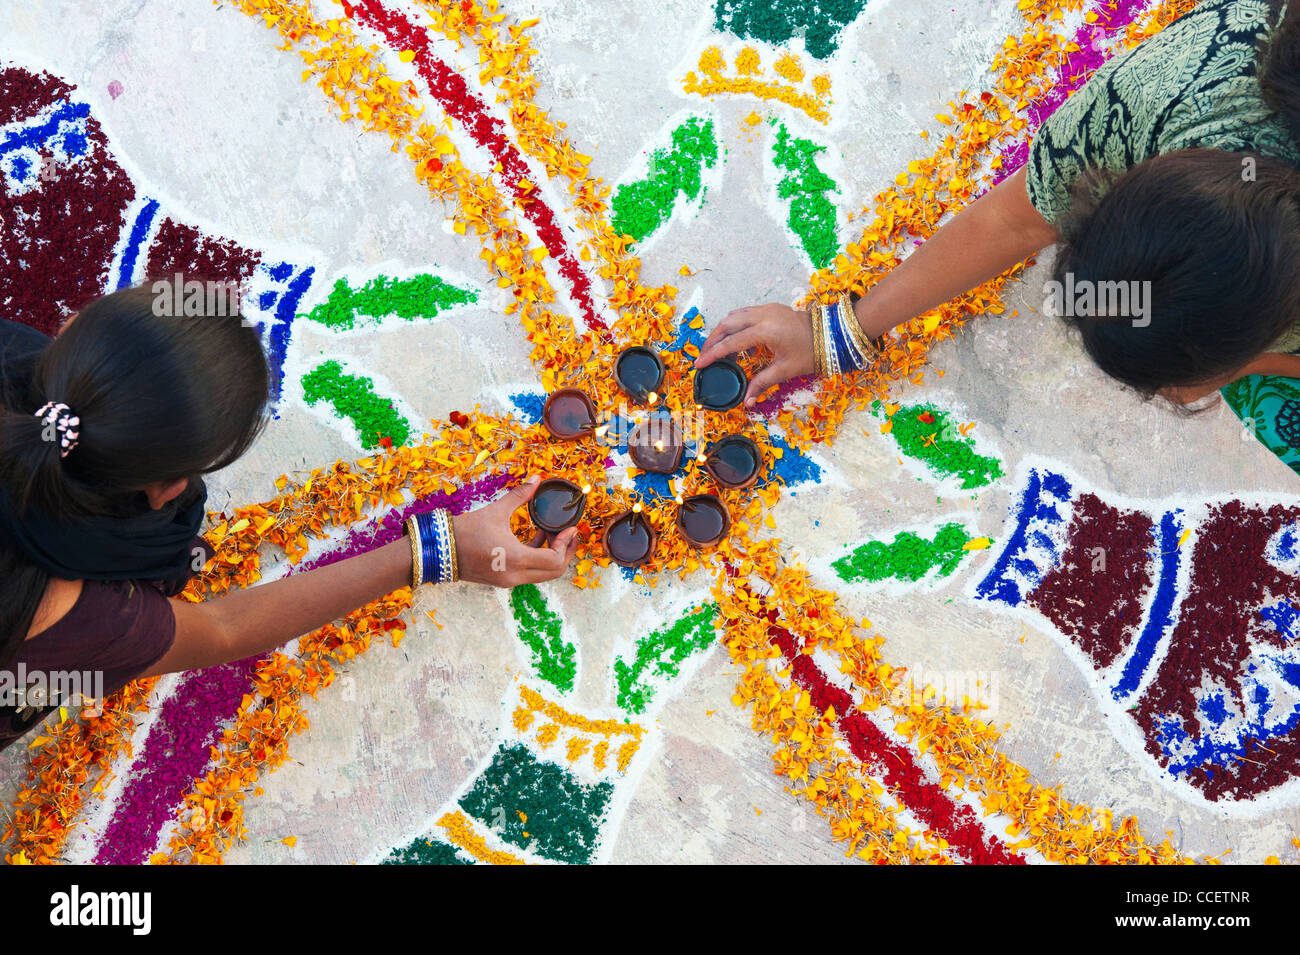 Les sœurs de l'Inde faisant un rangoli design au festival de Sankranthi. Puttaparthi, Andhra Pradesh, Inde Banque D'Images